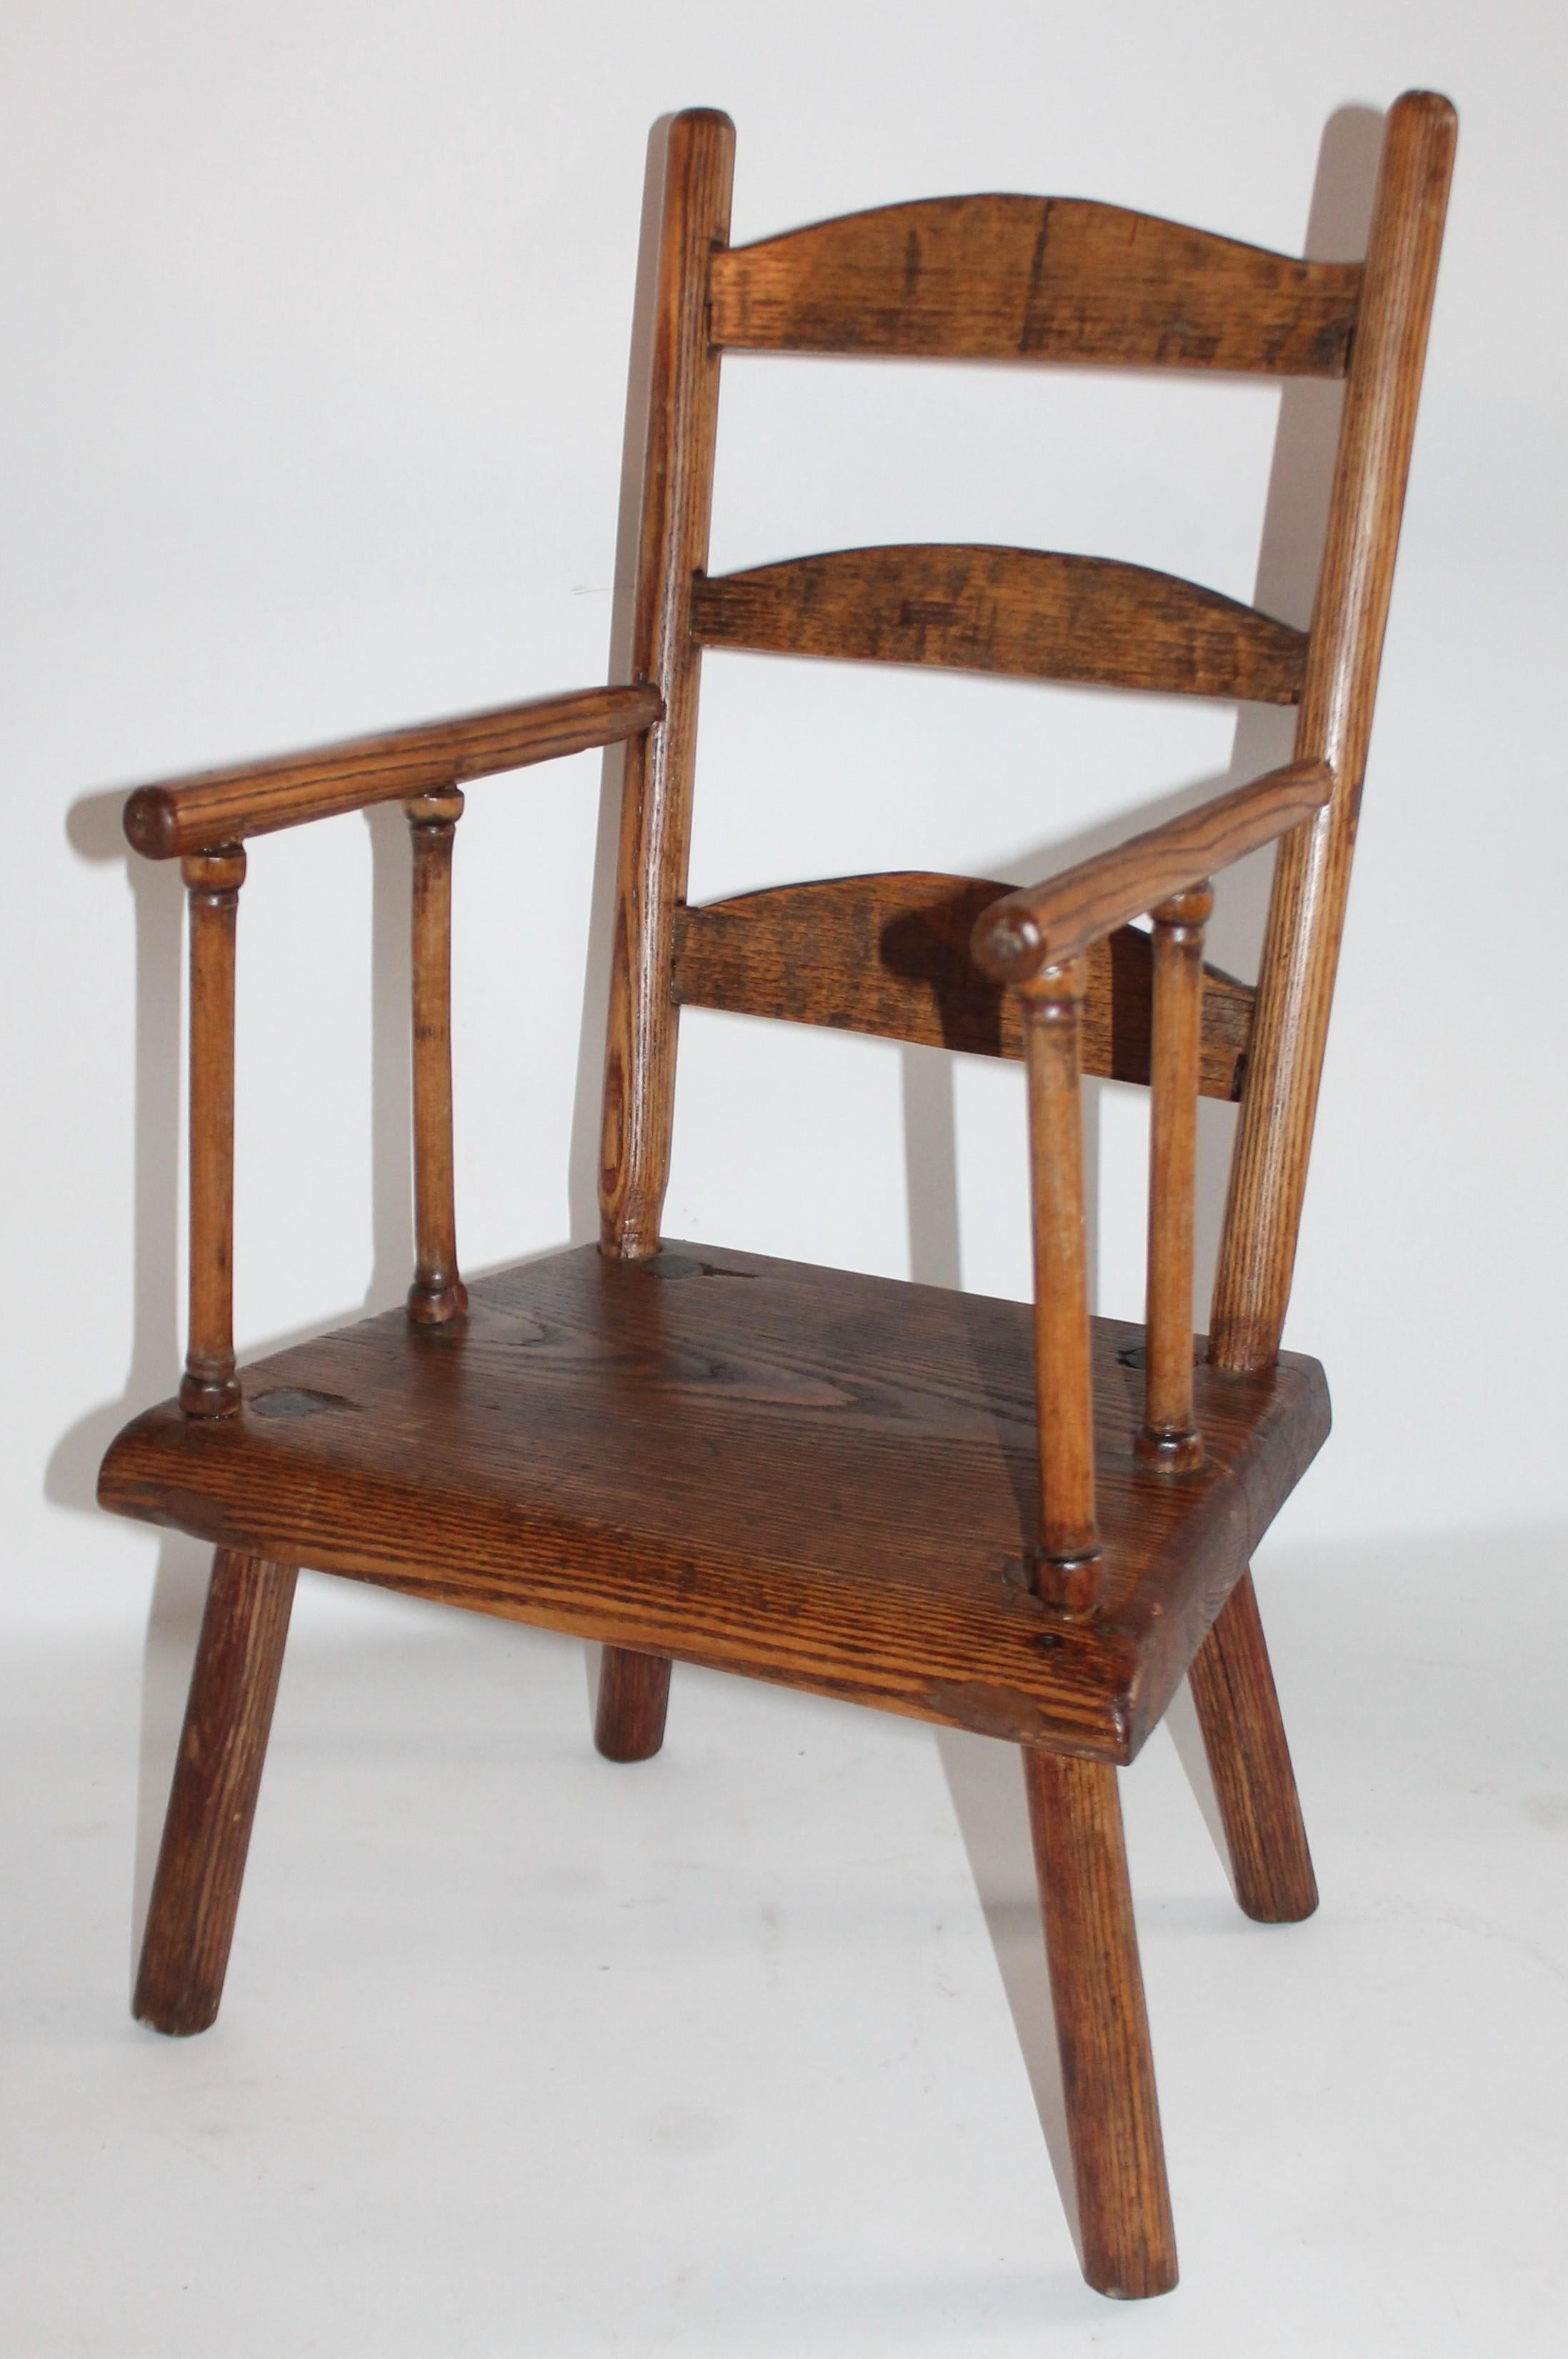 Kinderstuhl mit Leiterlehne aus Neuengland aus dem frühen 19. Jahrhundert in fantastischem Zustand. Dieser frühe Stuhl ist mit Zapfen und Vierkantnägeln gearbeitet.